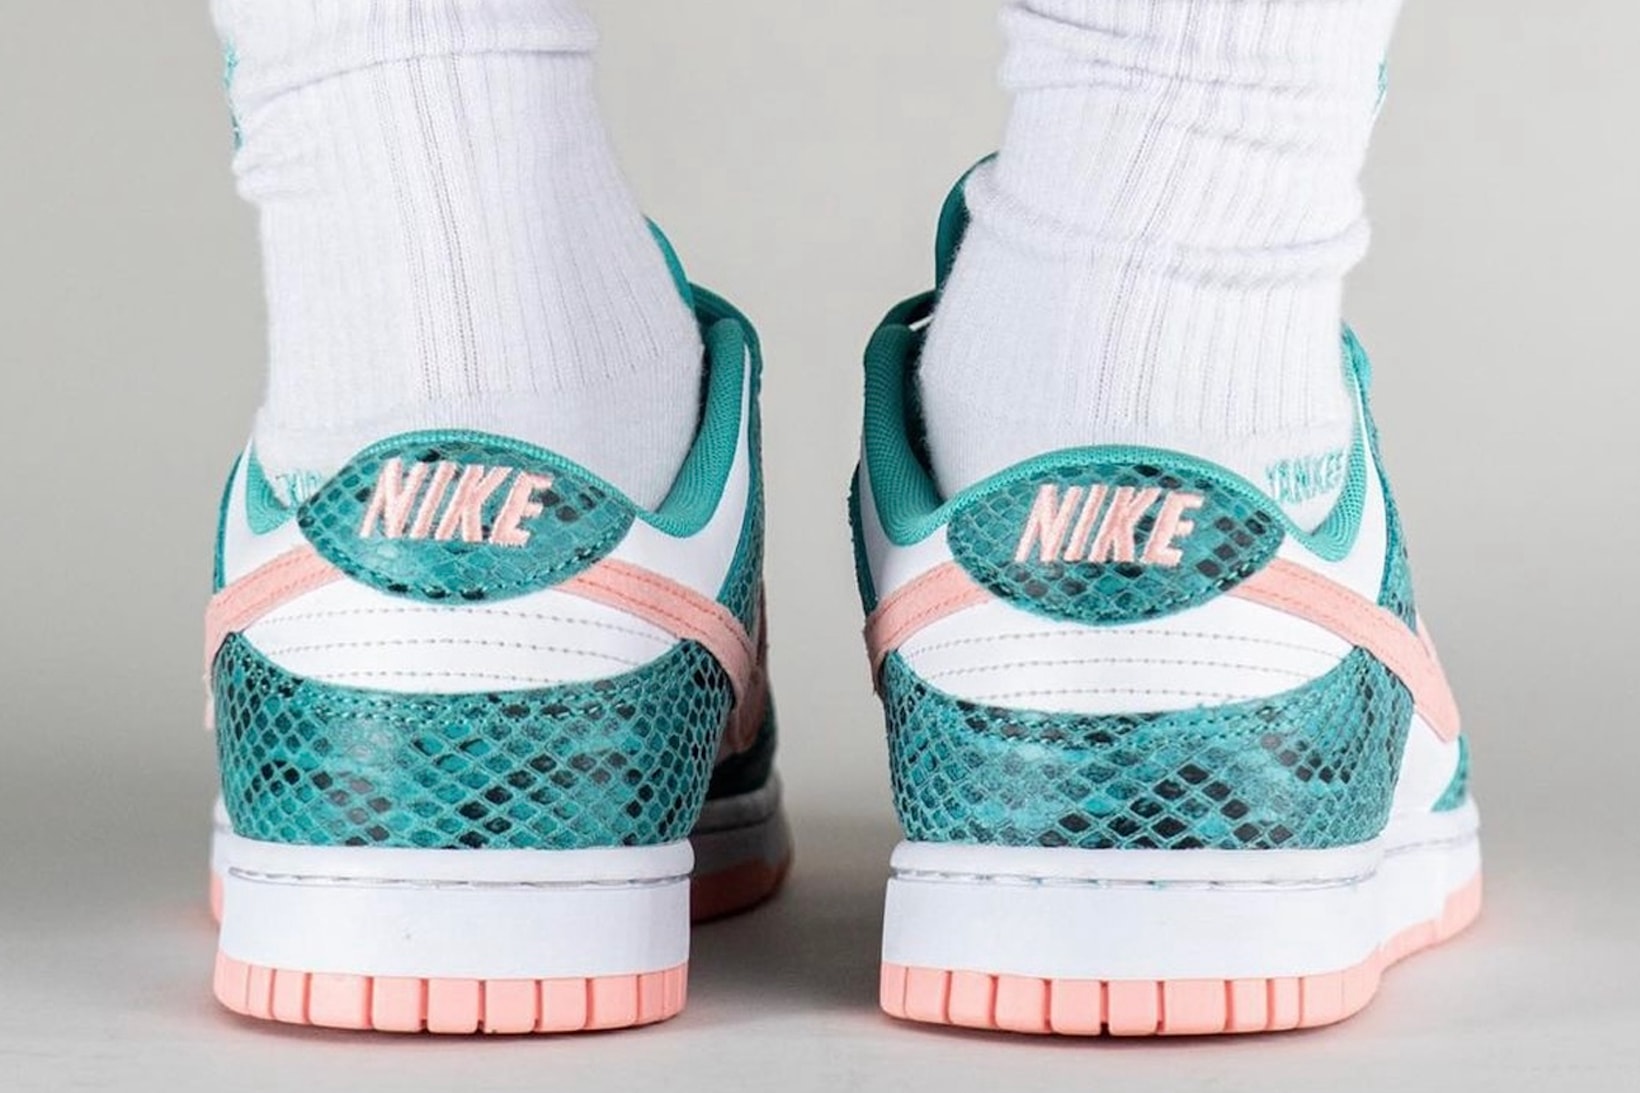 Nike Dunk Low Teal Pink Snakeskin Sneakers Footwear Kicks Shoes